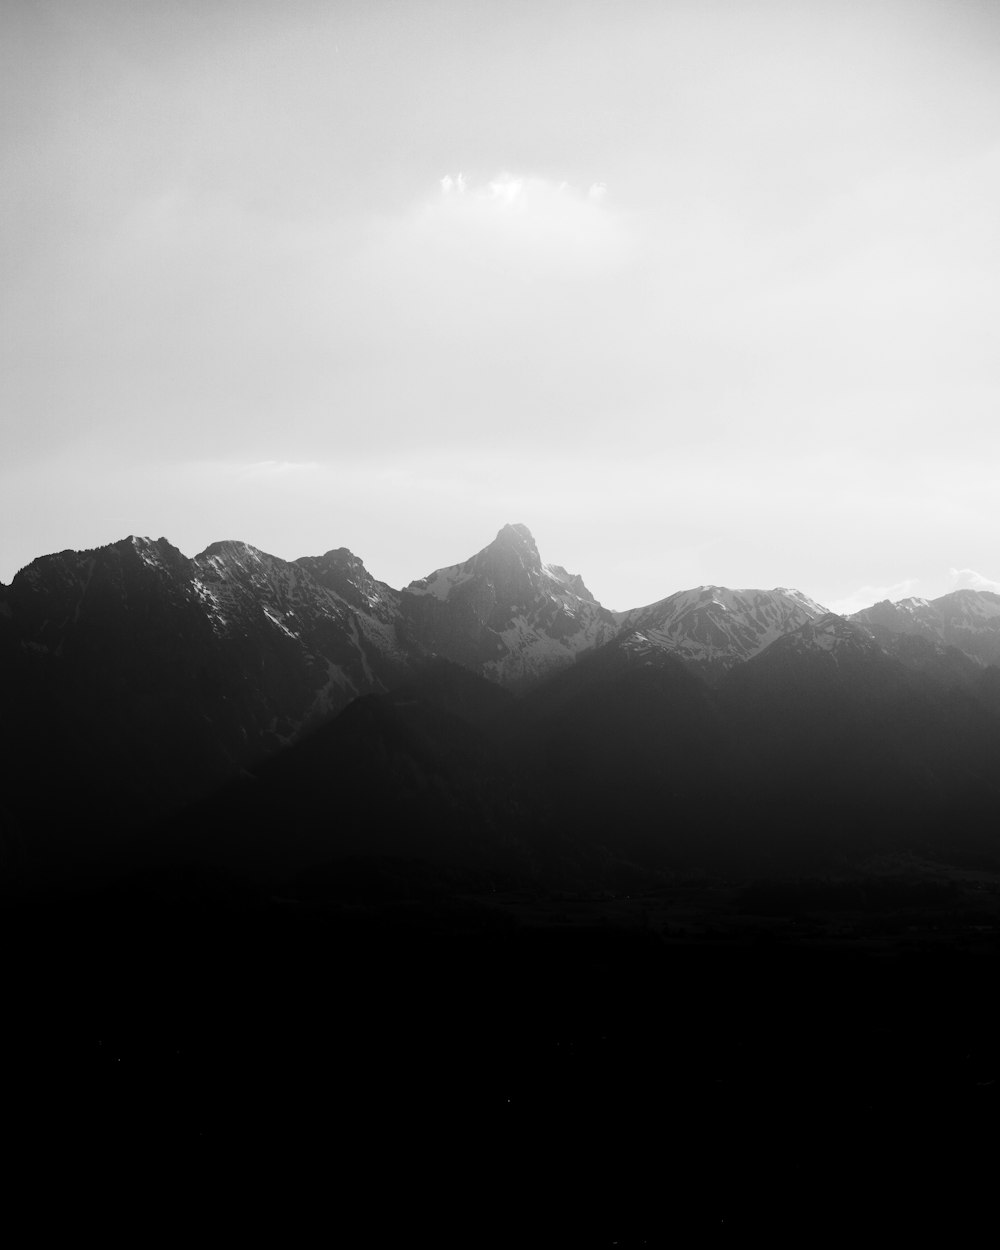 Una foto in bianco e nero di una catena montuosa